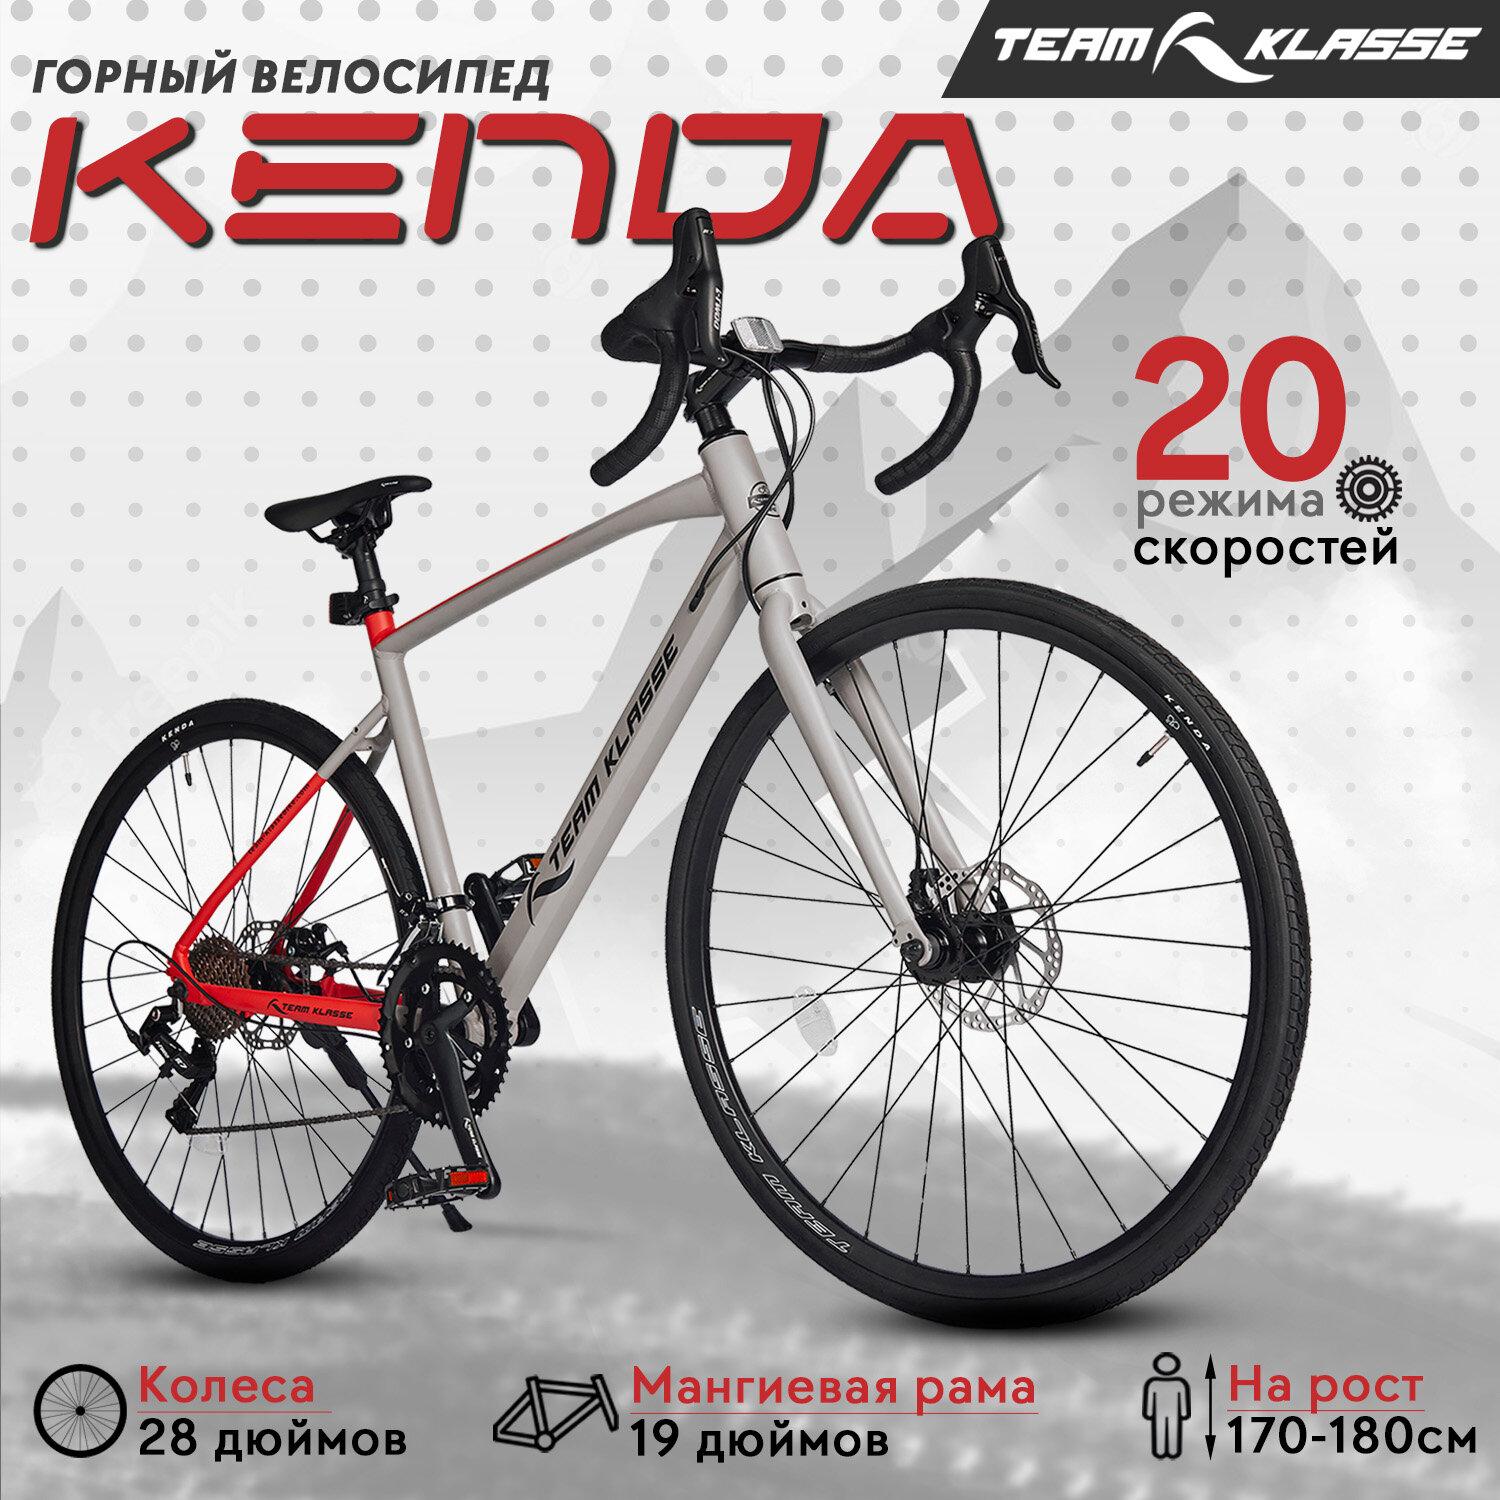 Городской велосипед Team Klasse A-5-A, серебристый, 28"